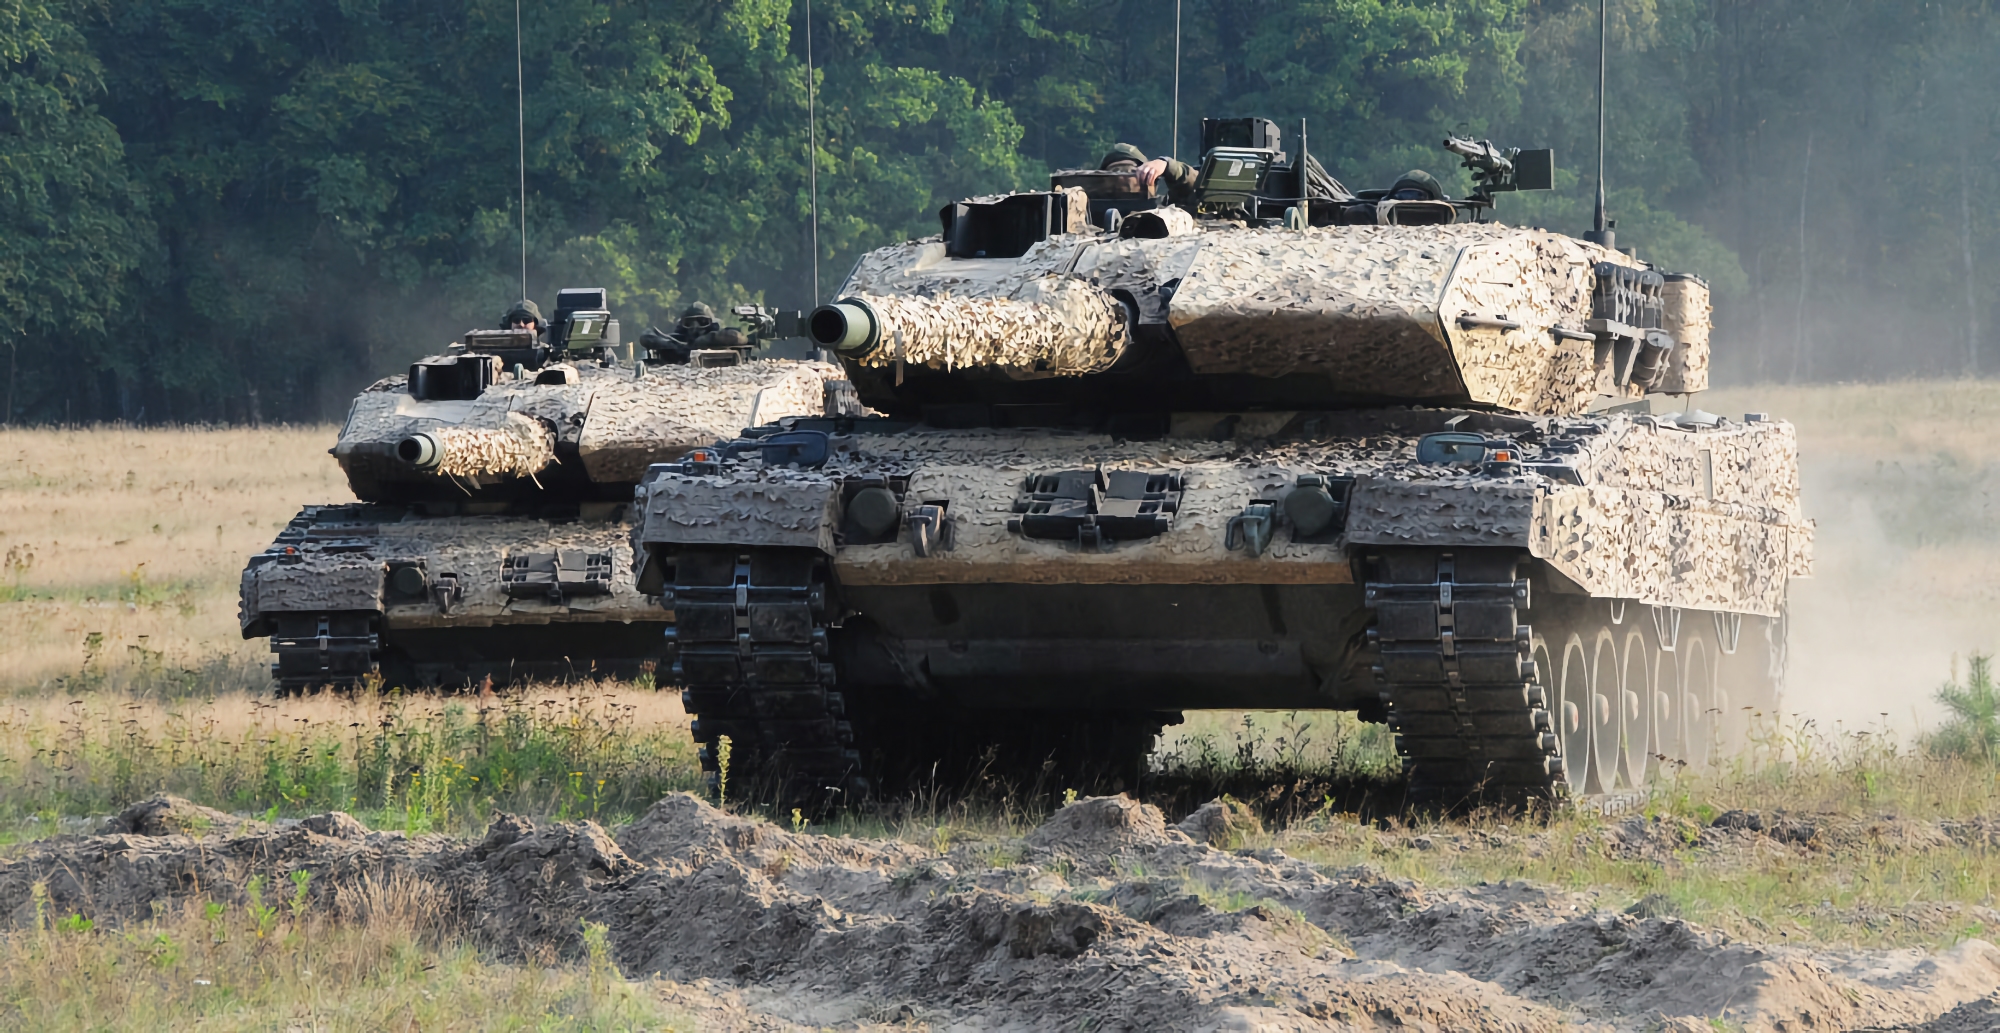 Polen liefert zweites Los von Leopard 2A4-Panzern an die ukrainischen Streitkräfte